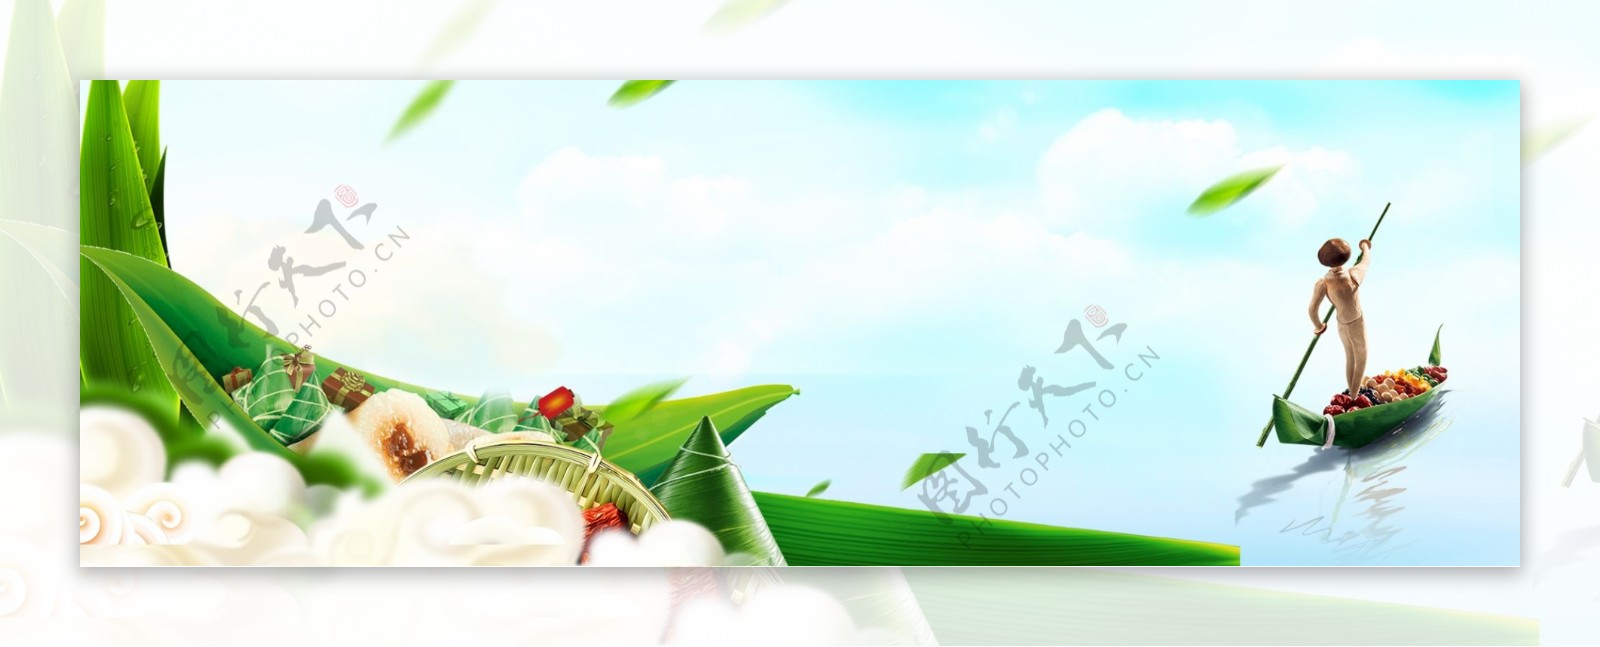 绿色中国风端午节粽子竹叶背景